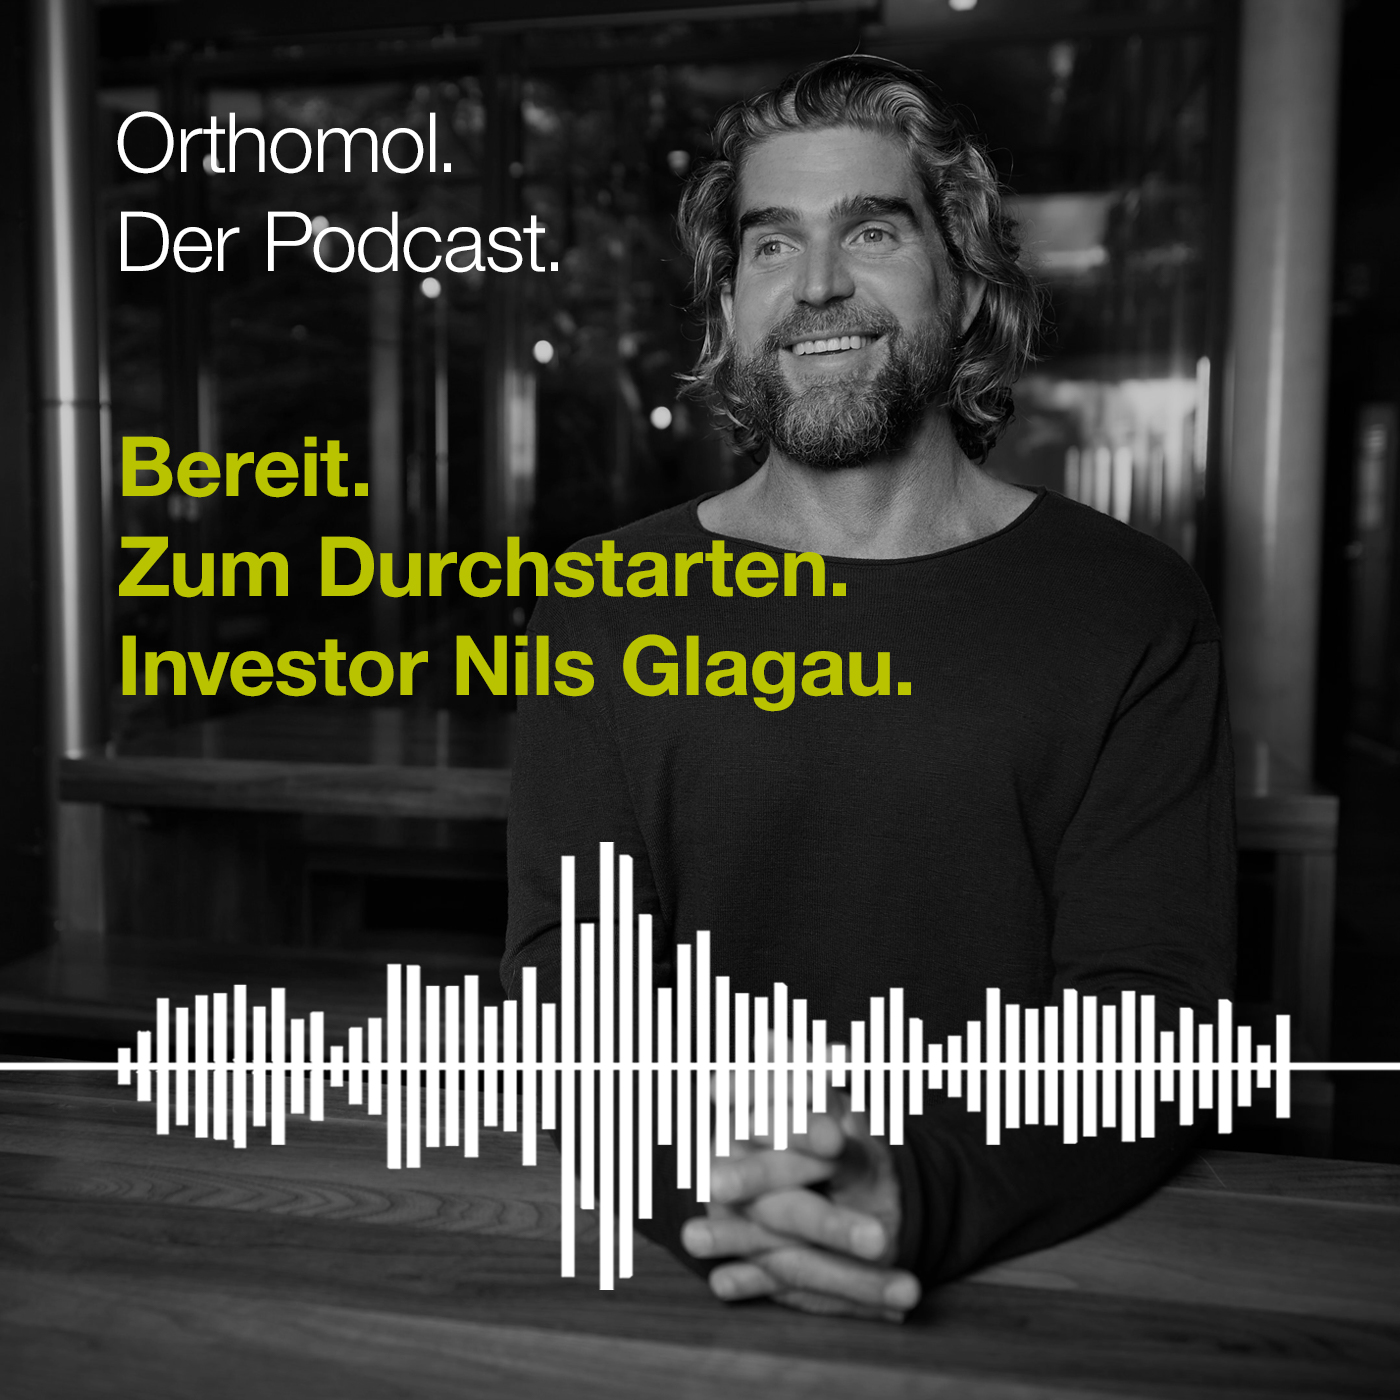 Bereit. Zum Durchstarten. Investor Nils Glagau.